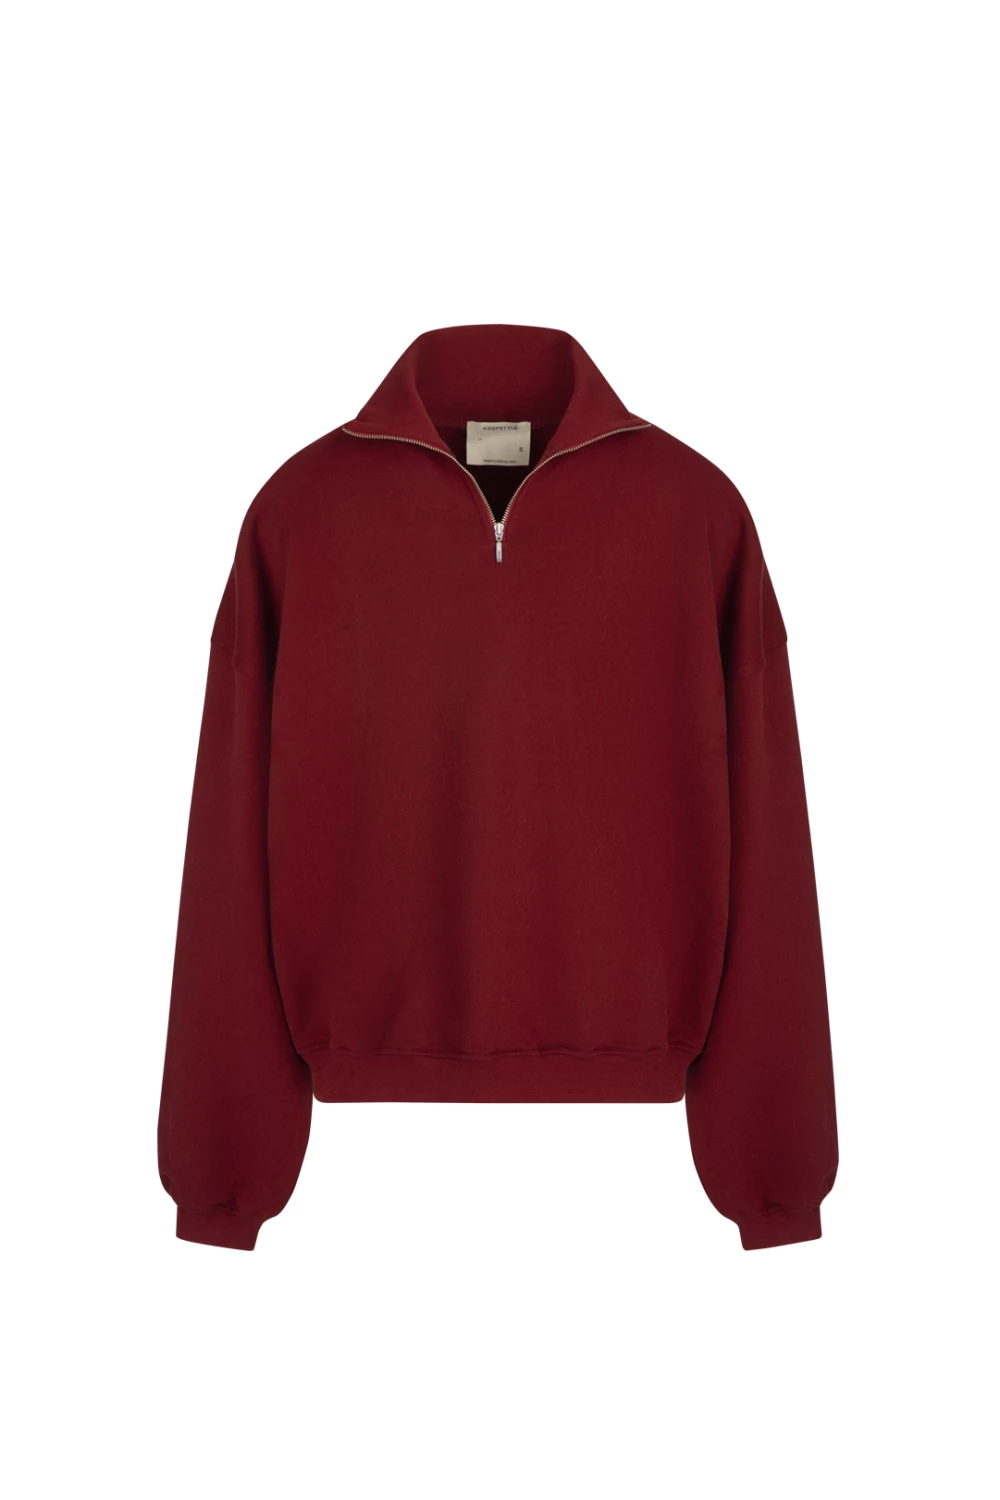 half zip sweatshirt in dark red color